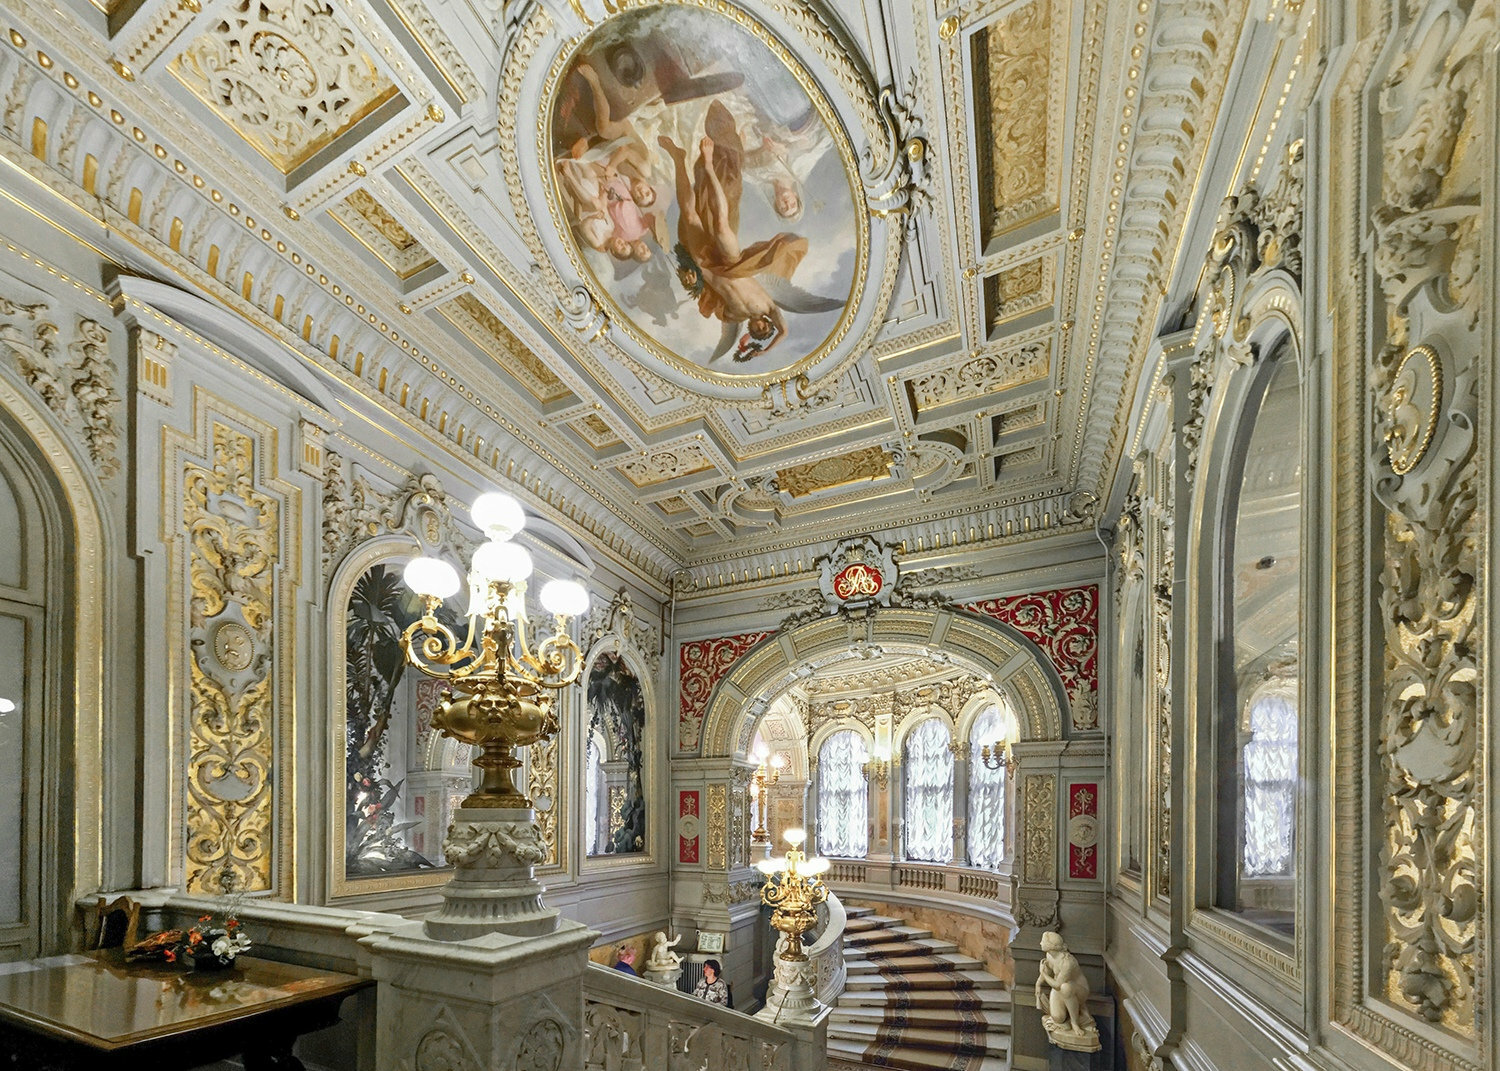 <span style="font-weight: bold;">Авторская экскурсия по Владимирскому дворцу с посещением секретных комнат</span><br>